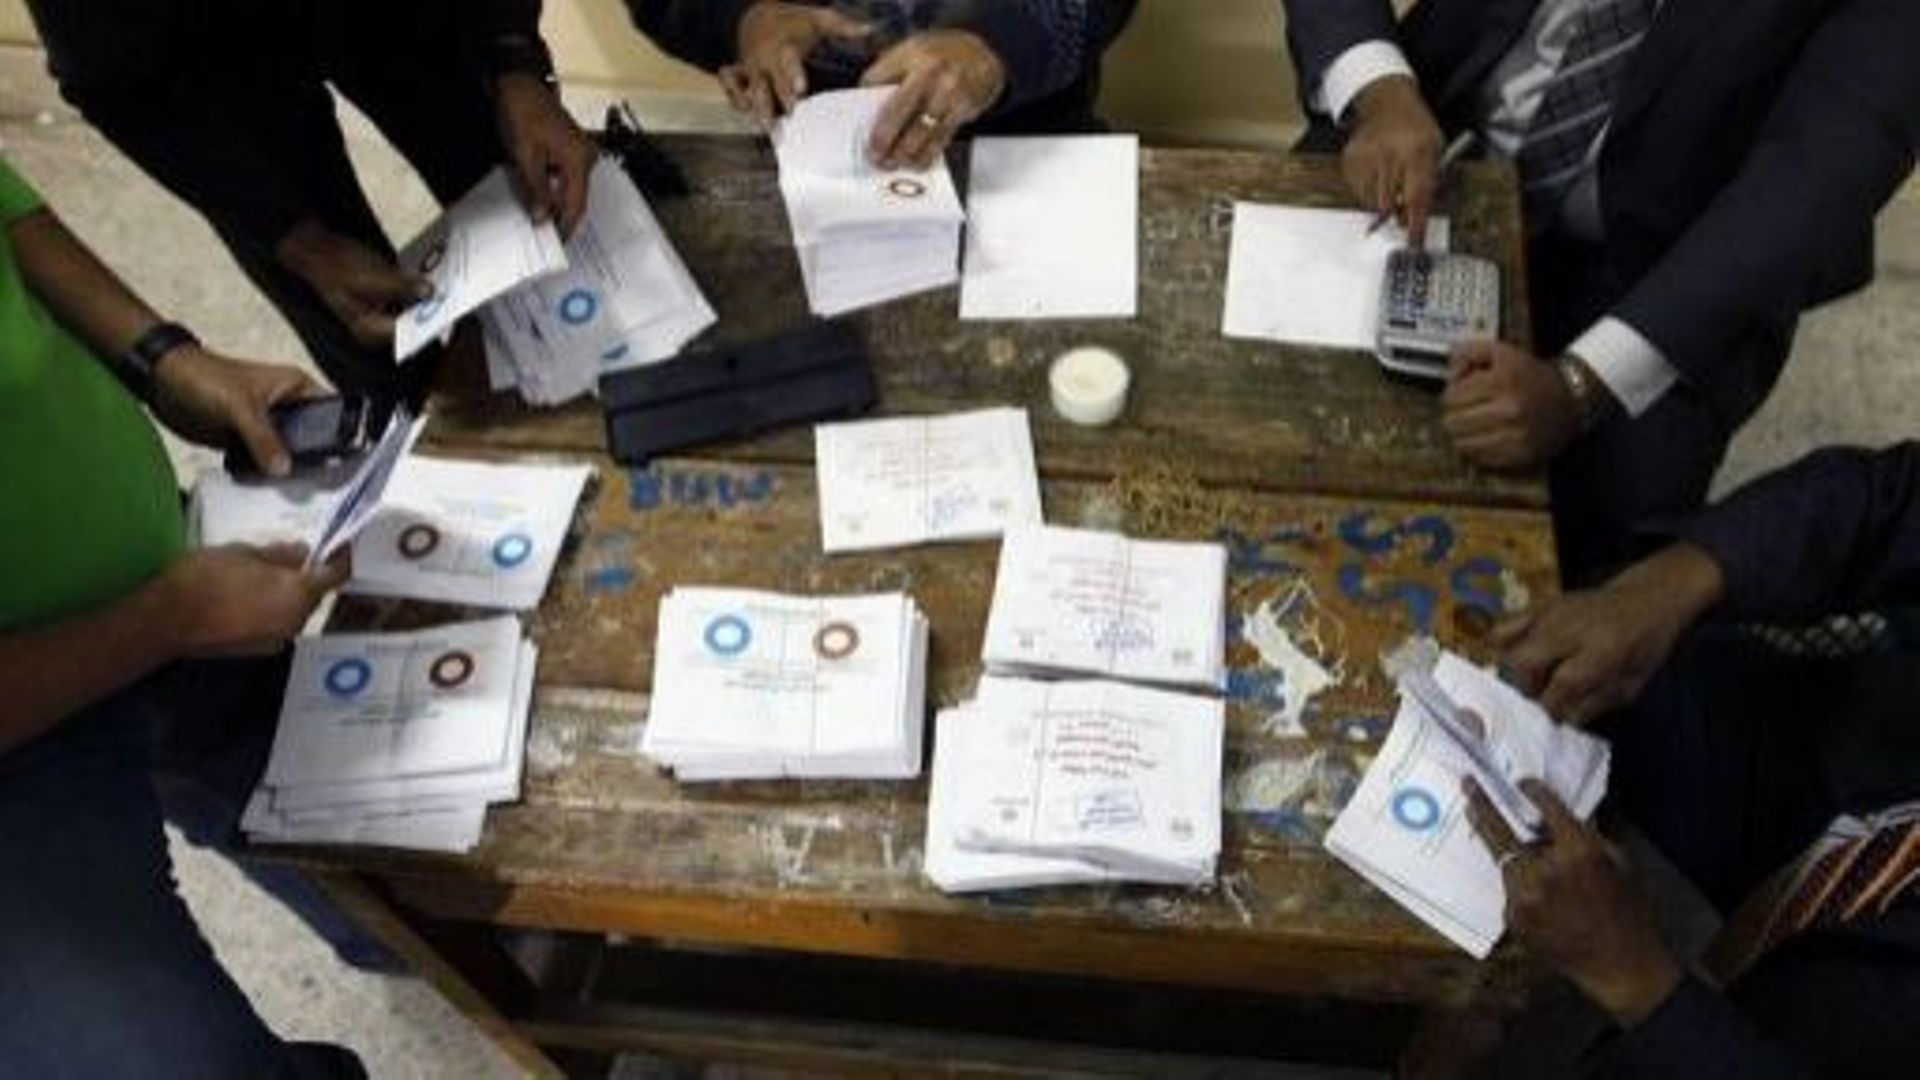 Dépouillement des votes après le référendum sur la nouvelle Constitution égyptienne, le 15 décembre 2012 dans un bureau de vote au Caire